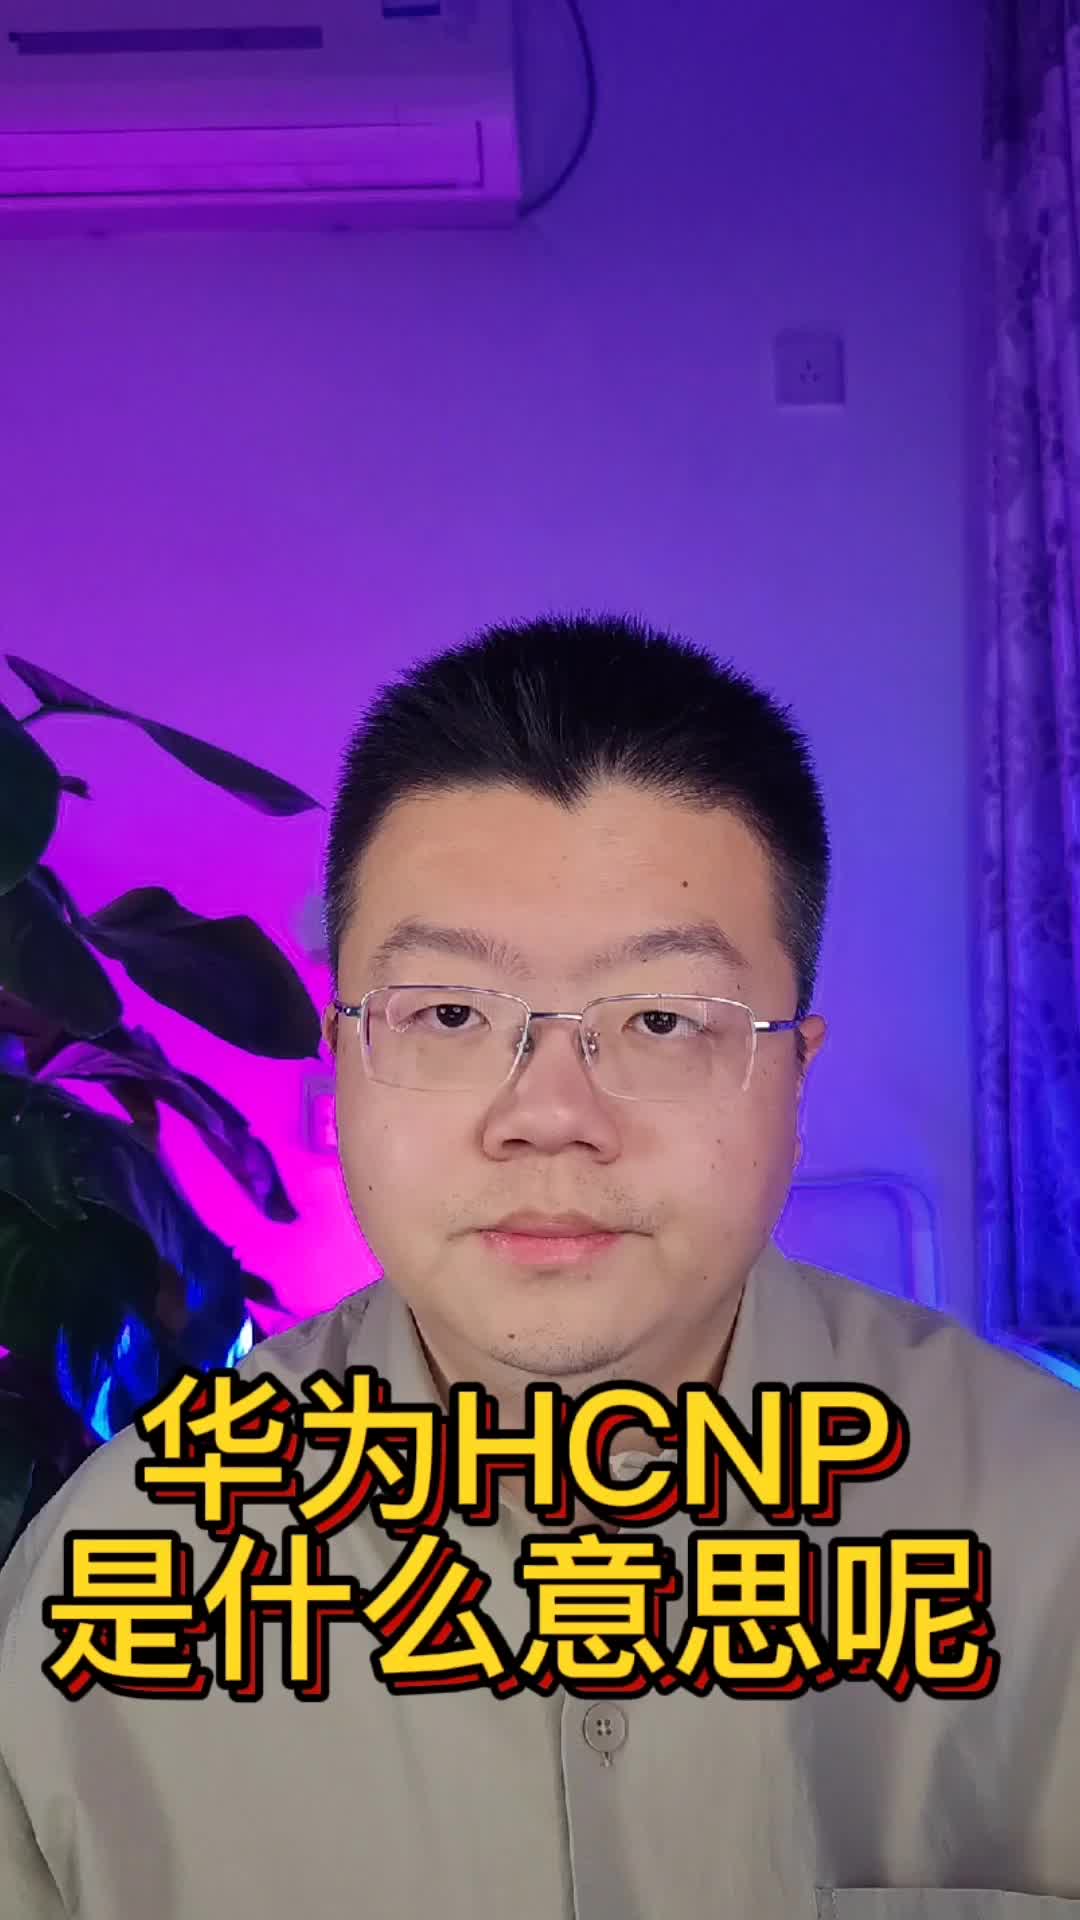 华为HCNP是什么意思呢